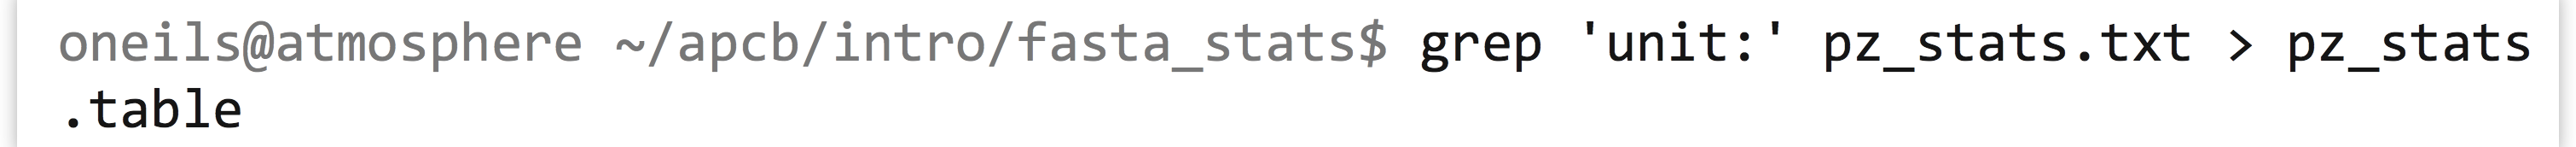 I.8_9_unix_102_fasta_stats_table